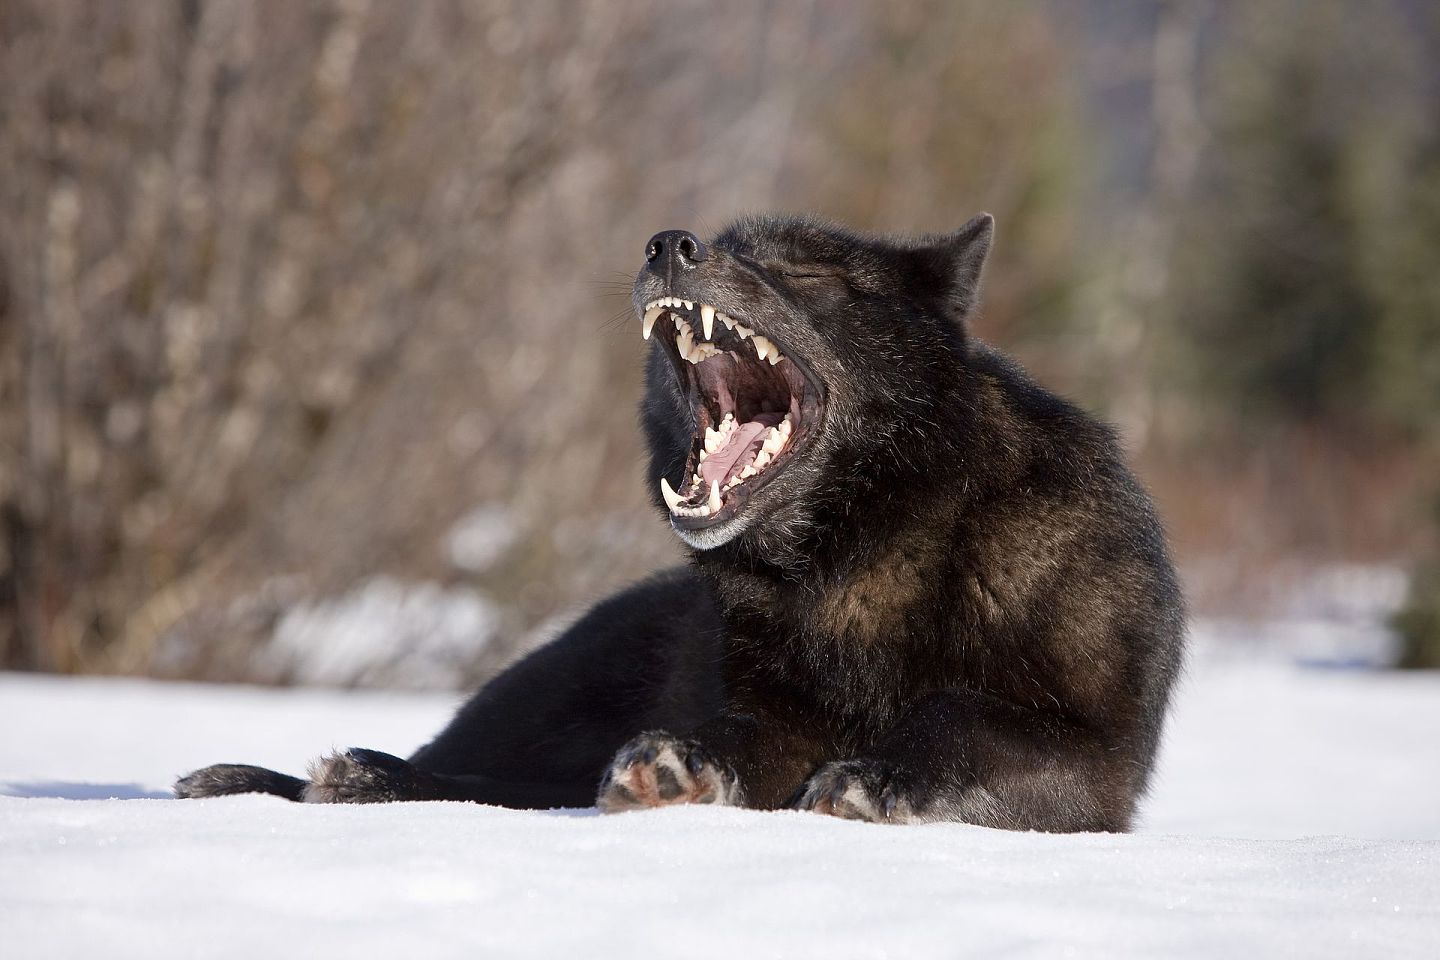 中国“战狼”式外交的讨论再度升温。图为野生动物摄影师John Hyde用六年追拍一匹黑狼。（V